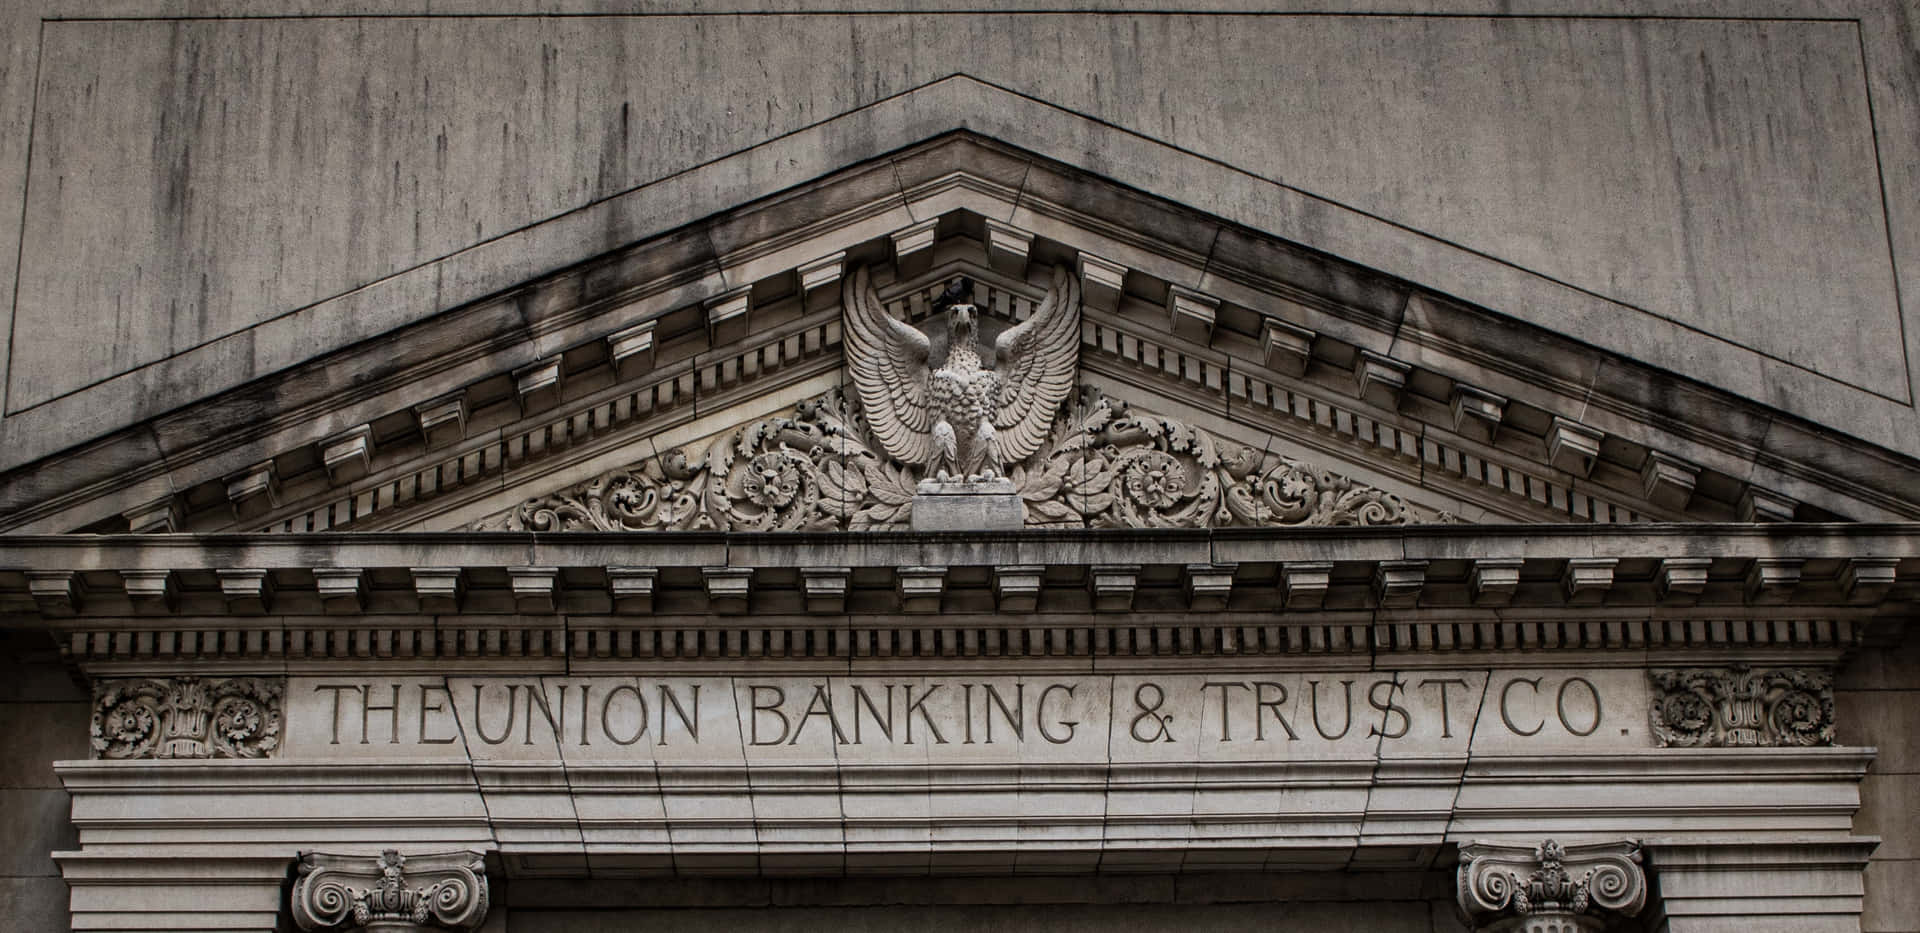 Unedificio Con Un Letrero Que Dice Theron Banking & Trust